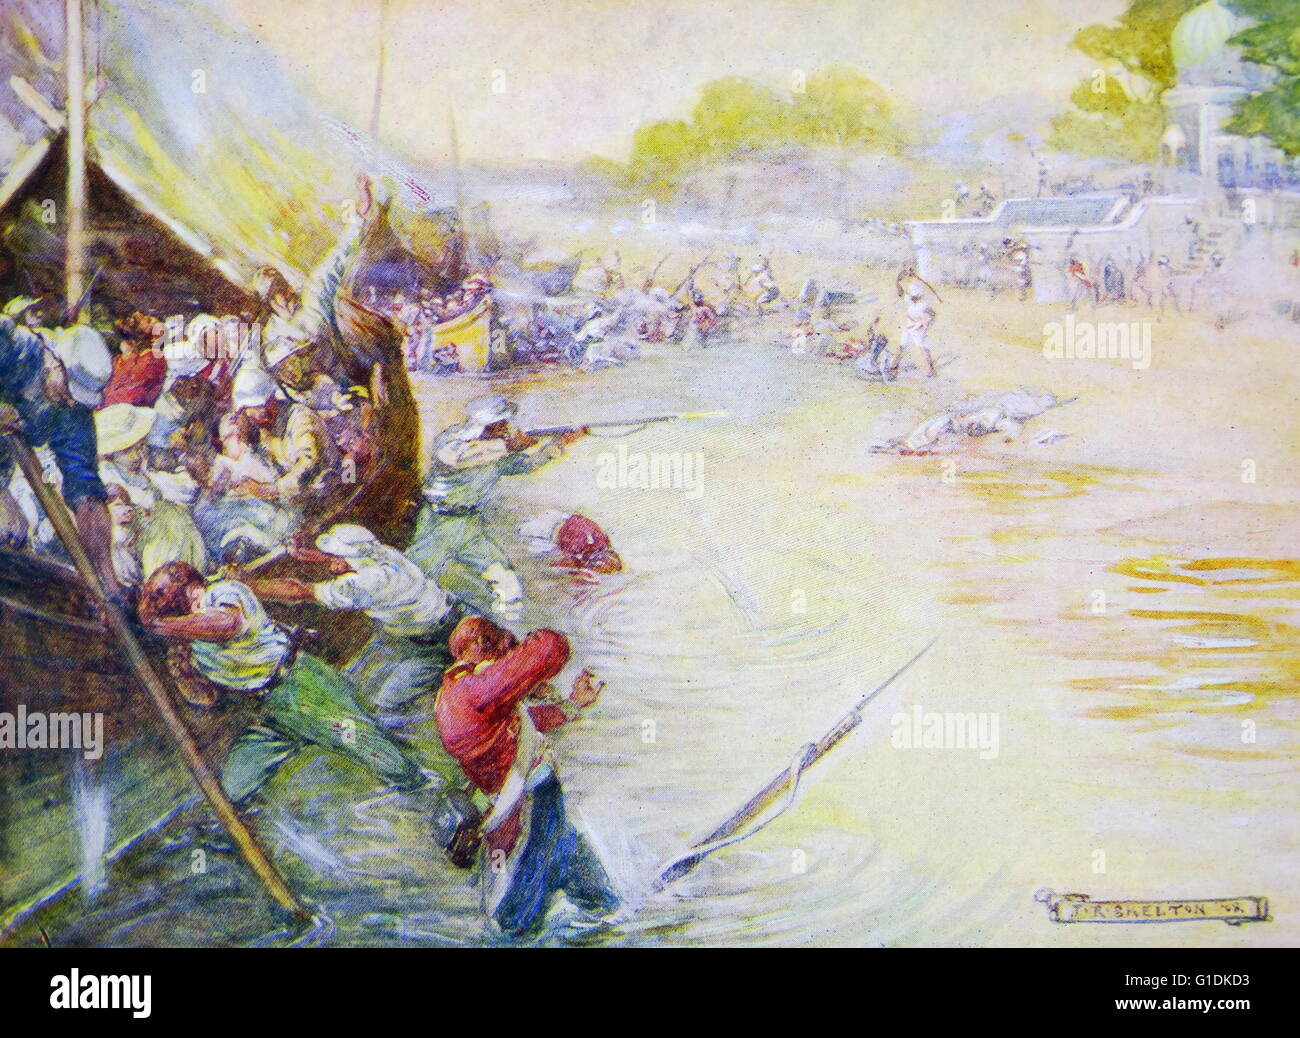 Gemälde, Soldaten und ihre Boote stecken im Schlamm des britischen Künstlers Joseph Ratcliffe Skelton (1865-1888). Datiert 1880 Stockfoto